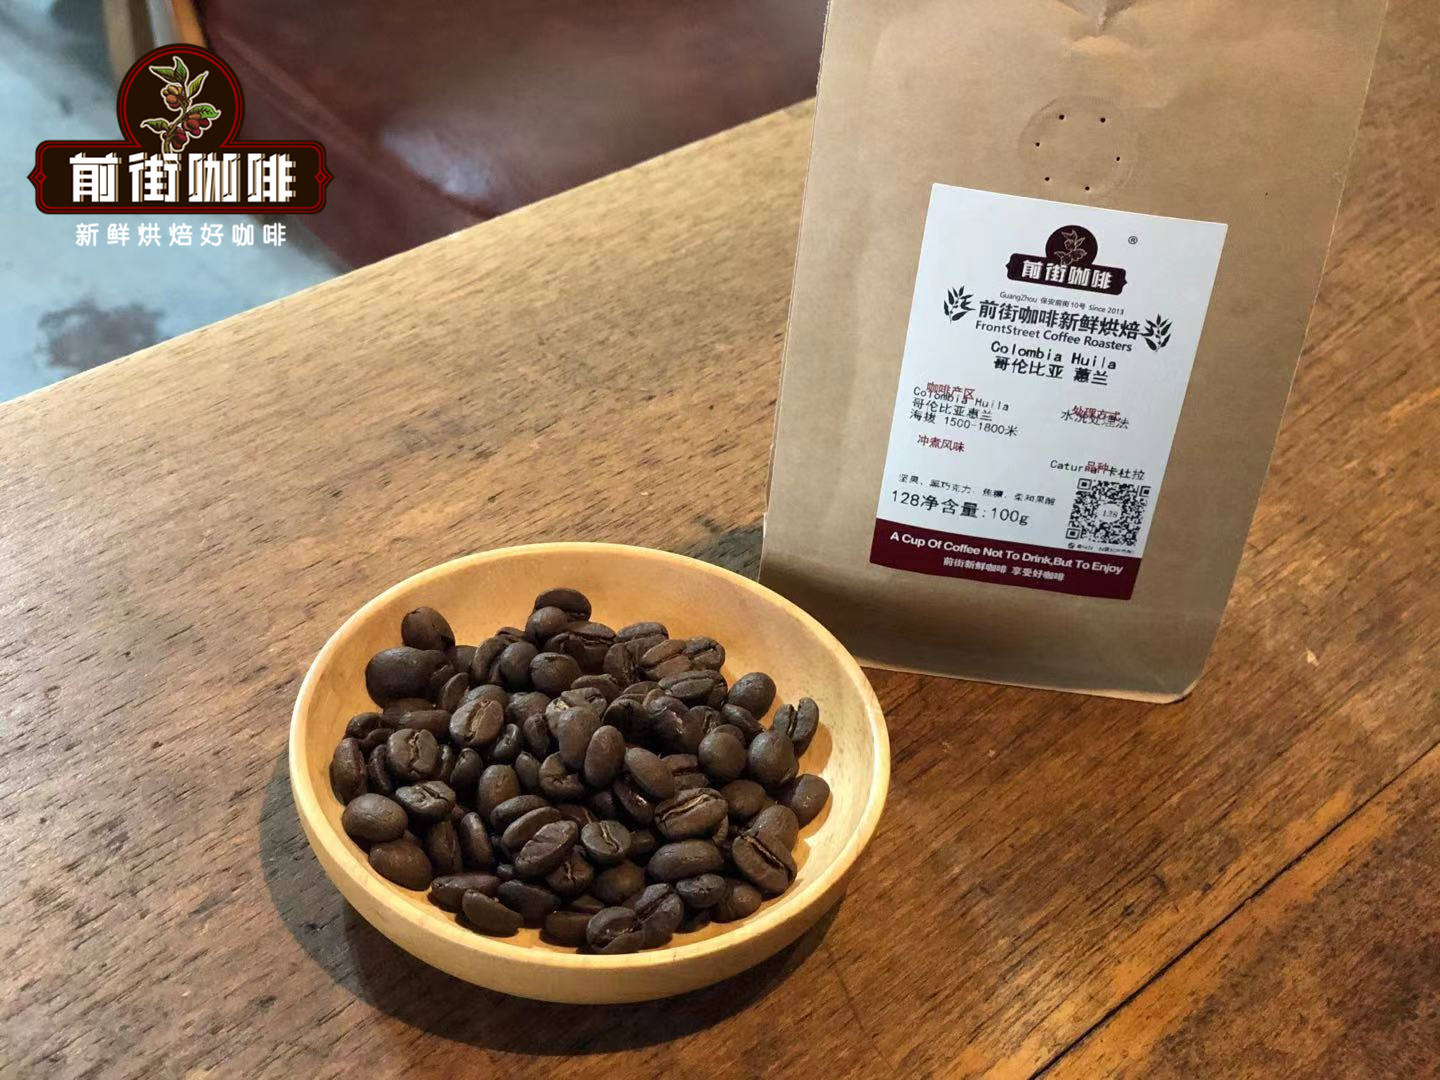 手衝入門級咖啡豆推薦 哥倫比亞蕙蘭咖啡豆風味口感咖啡粉怎麼衝